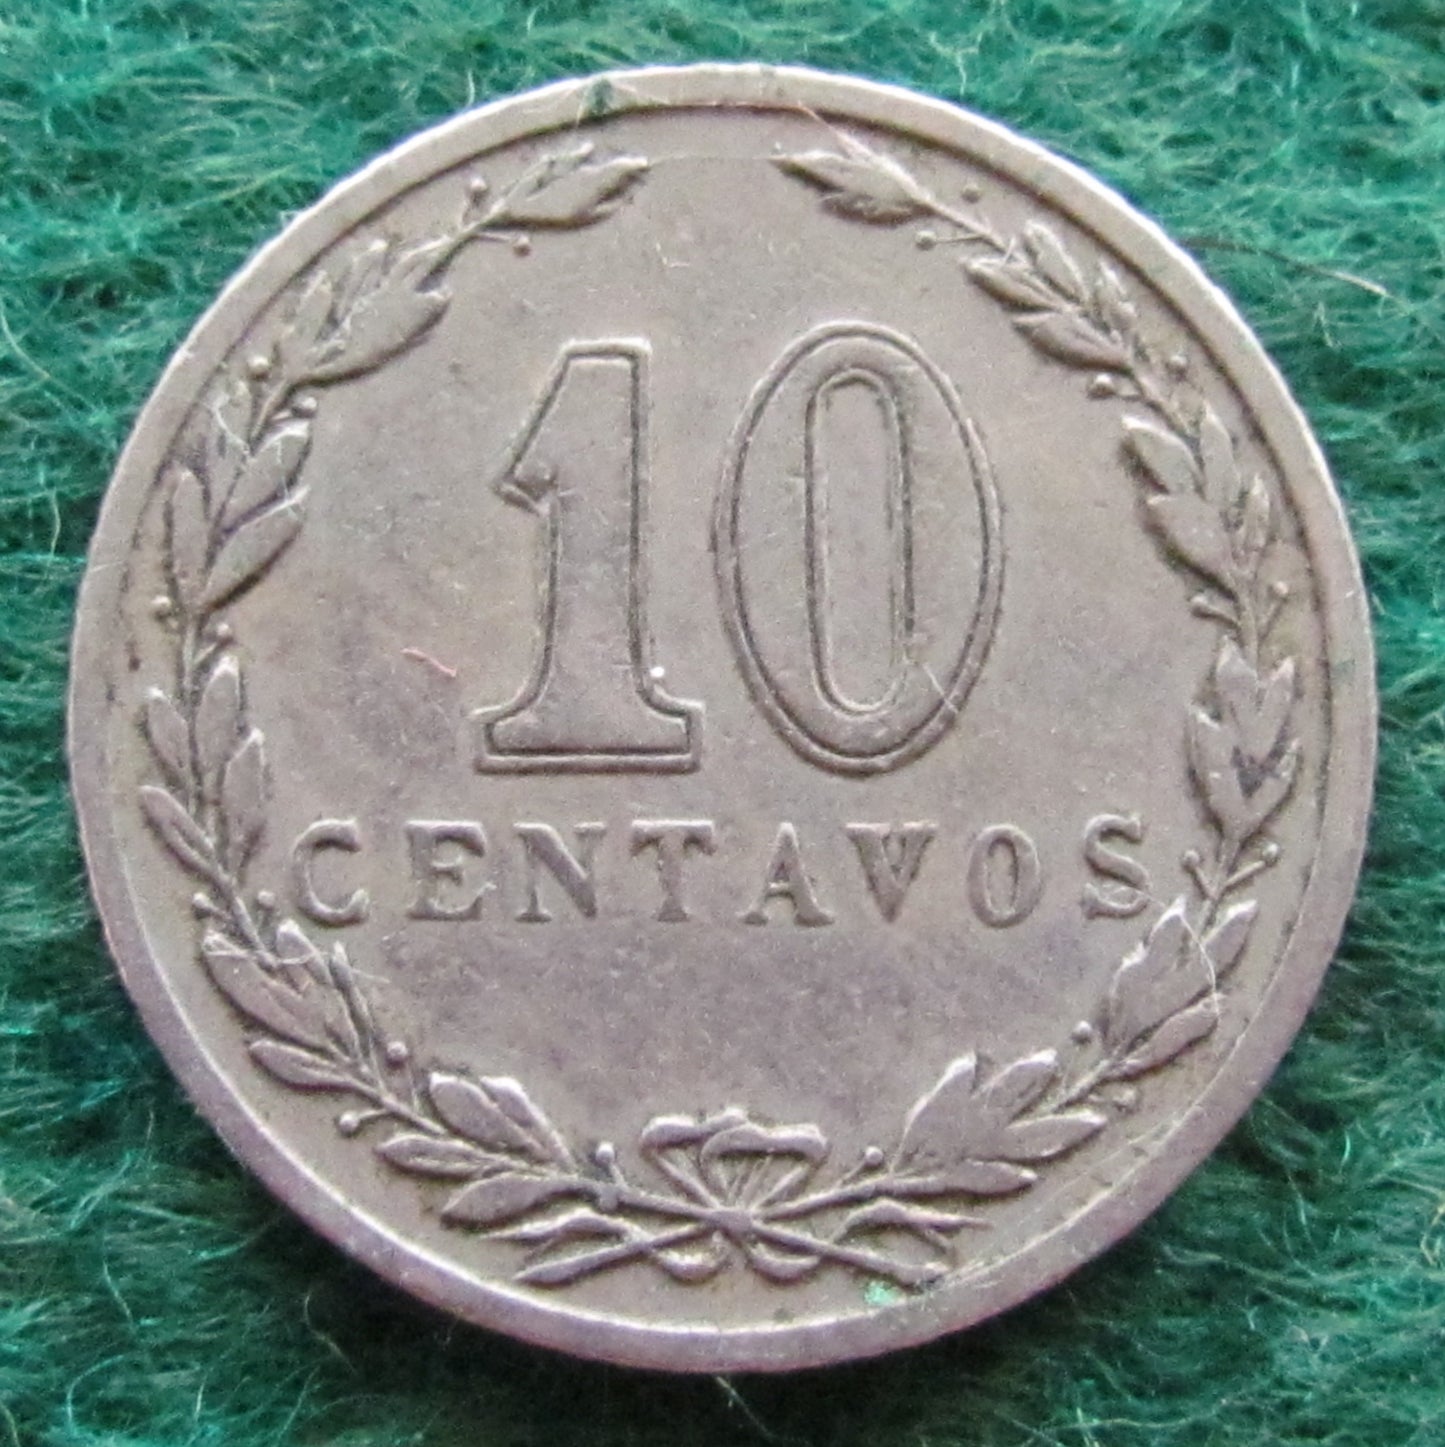 Argentina 1918 10 Centavos Coin - Circulated